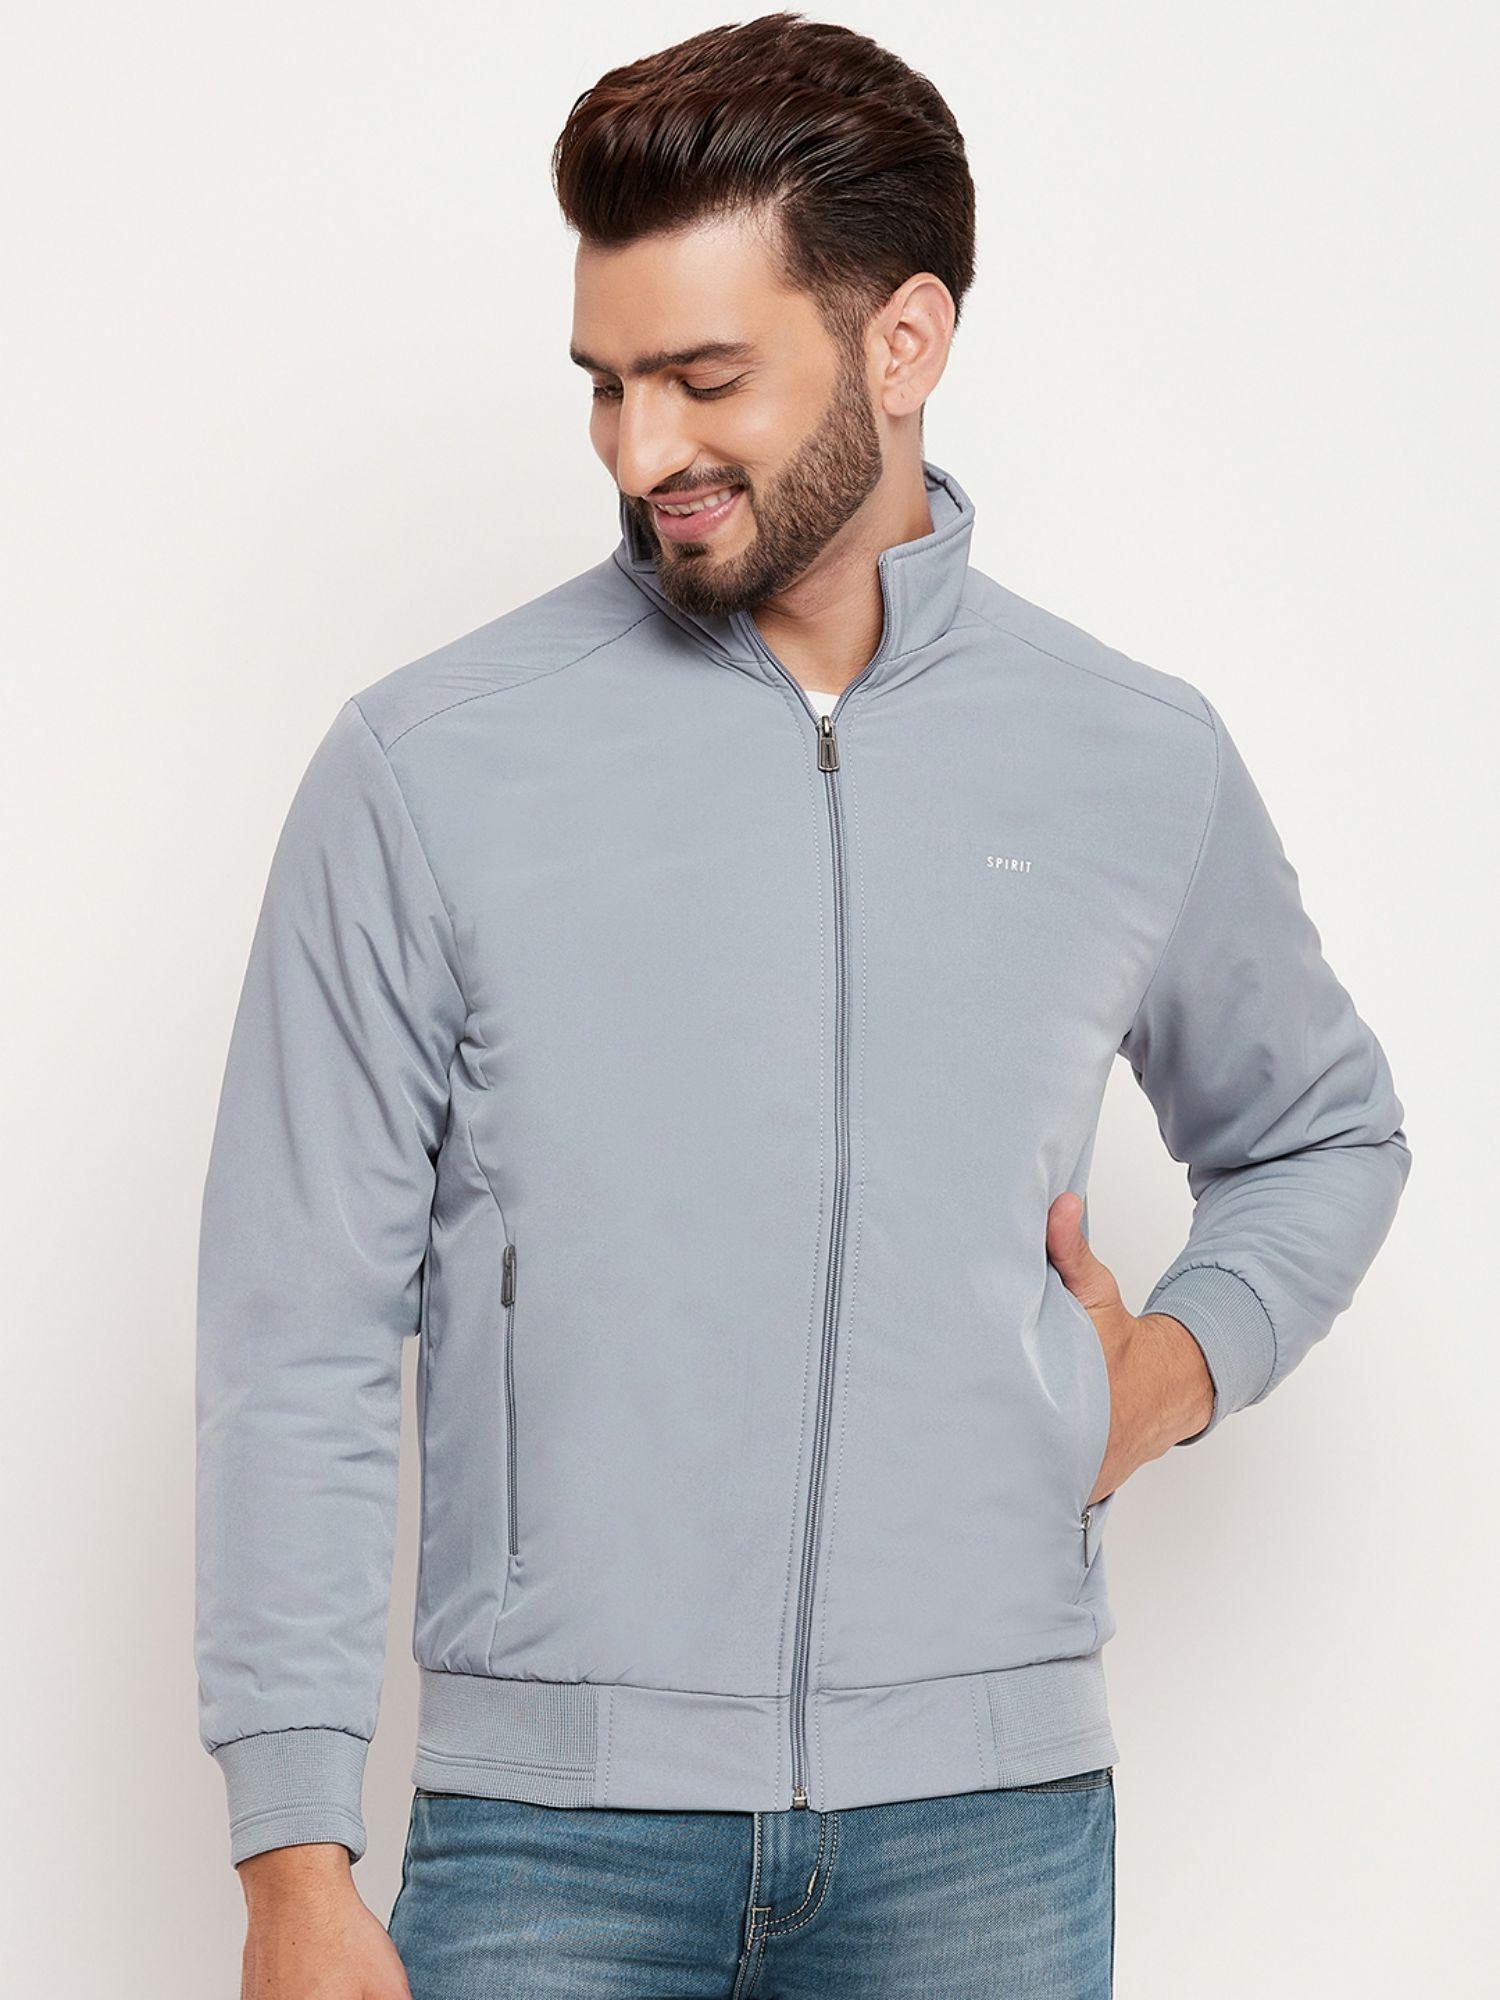 mens-light-grey-solid-jacket